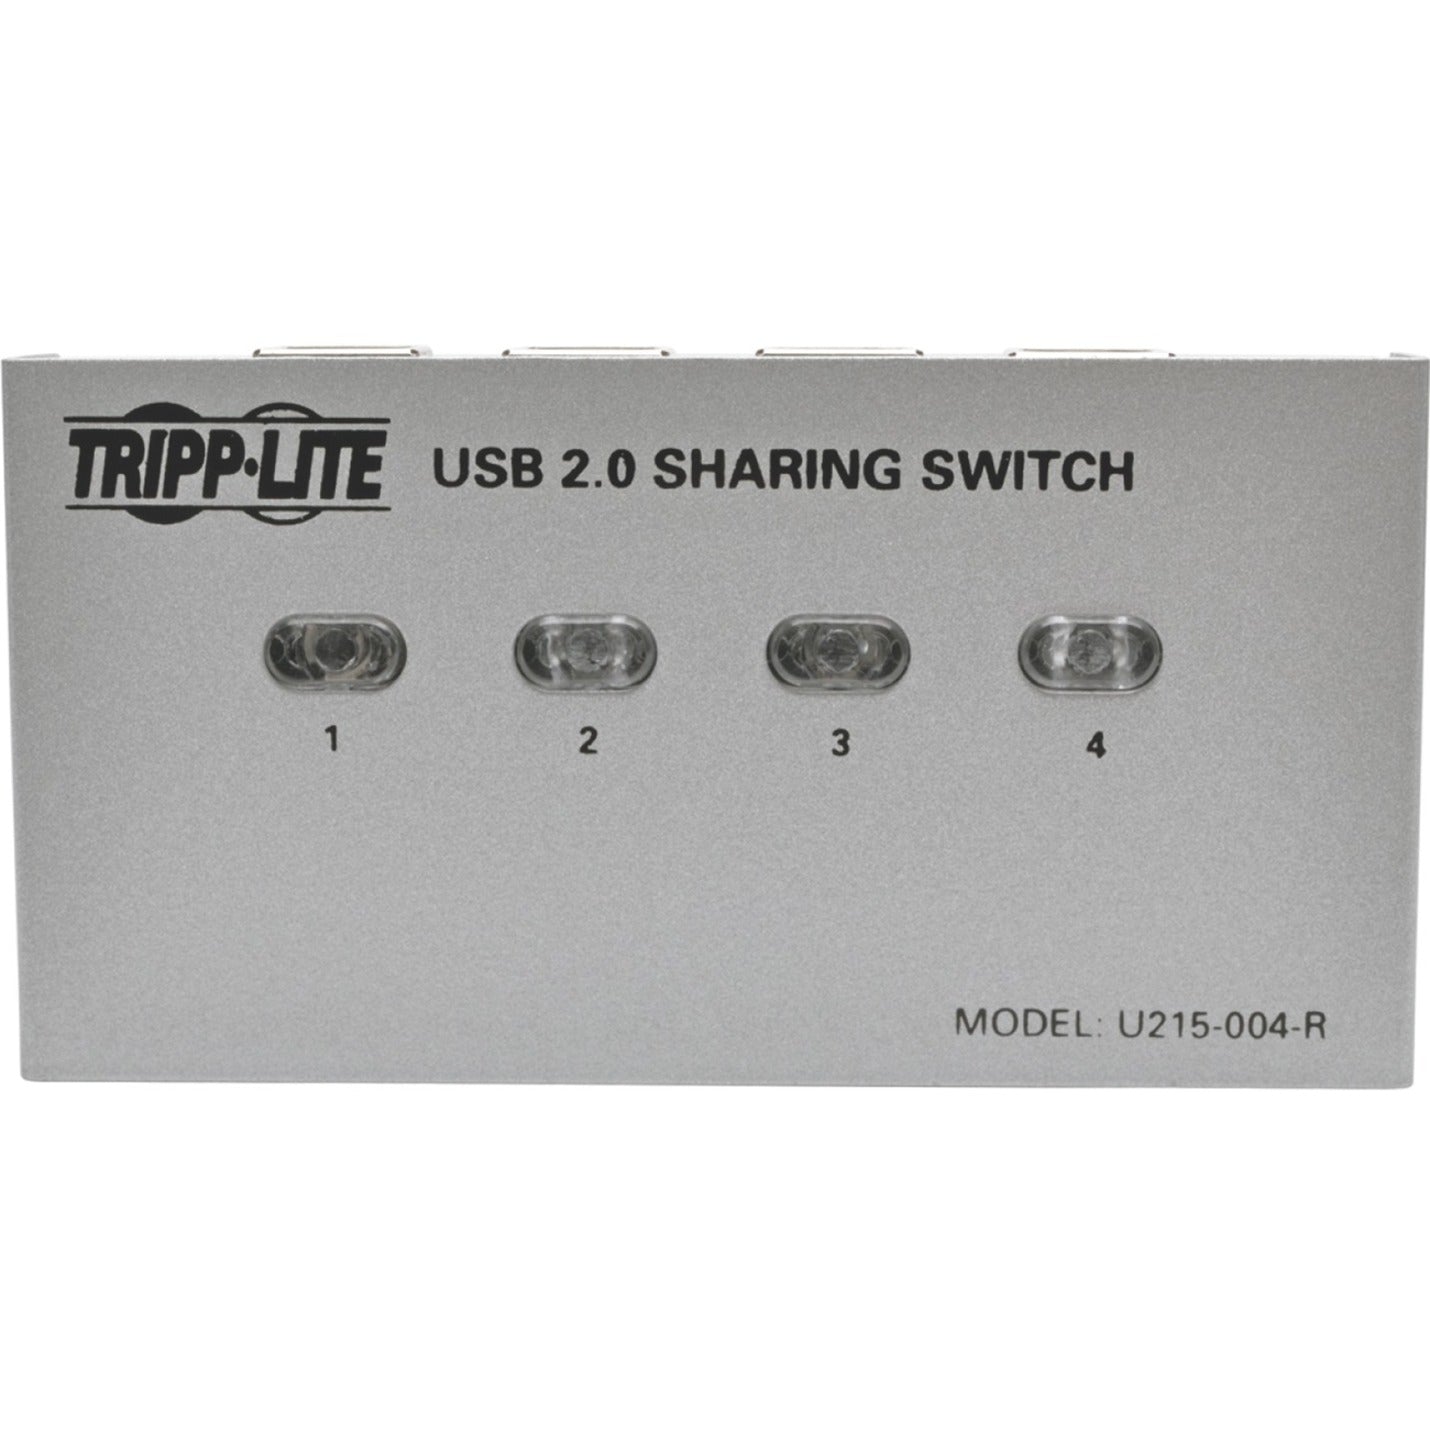 特力裏 U215-004-R 4-端口USB 2.0打印機/外設共享切換器，多台電腦間共享打印機。品牌名：特力裏。品牌名翻譯：Tripp Lite.